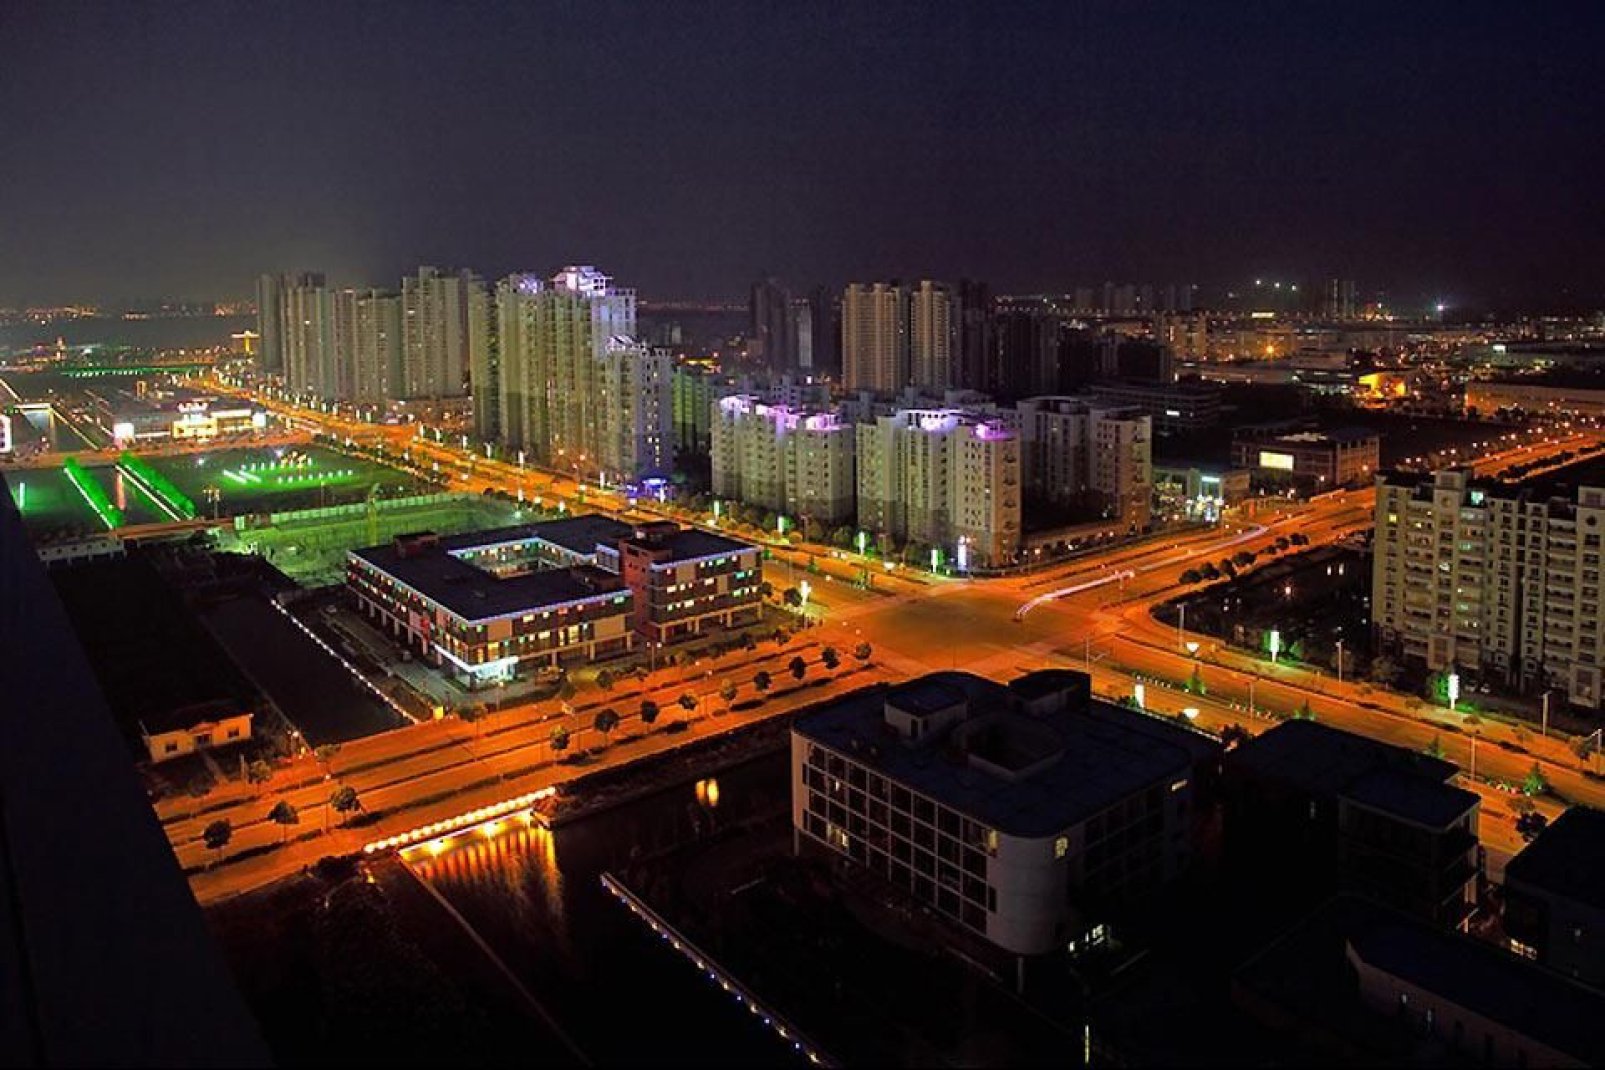 La ville de Suzhou illuminée par ses lumières nocturnes.